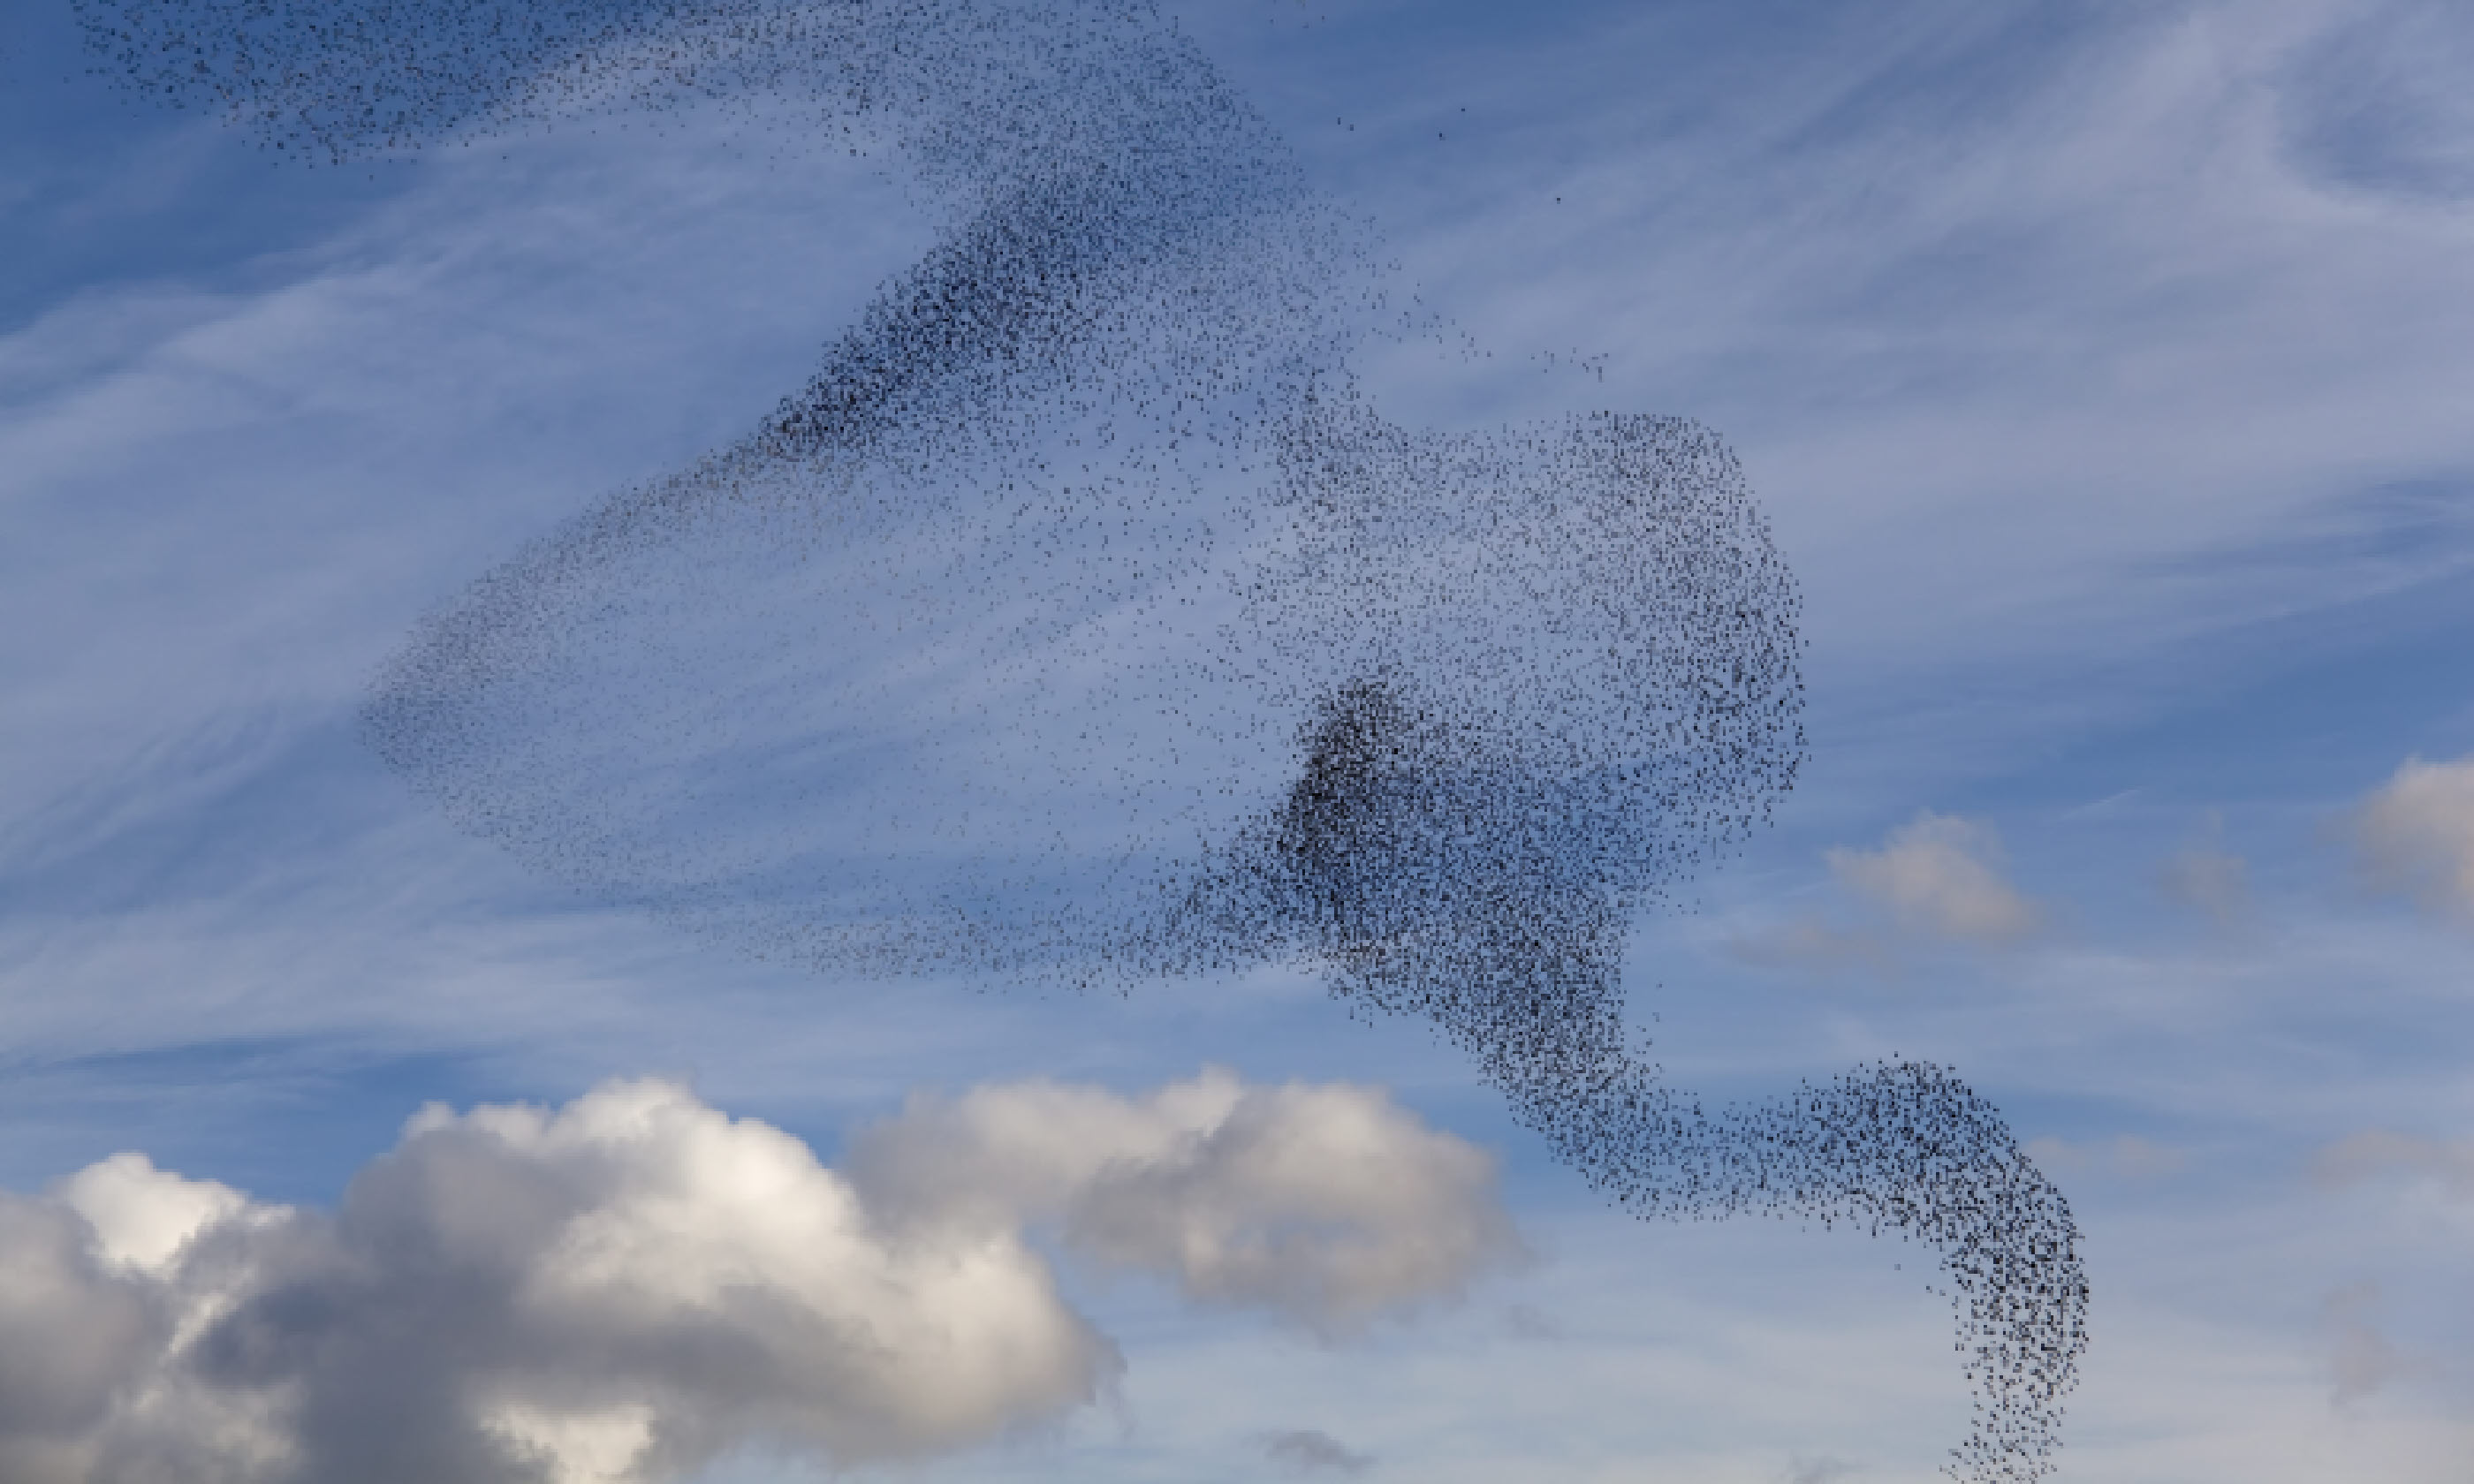 Starlings cloud (Shutterstock: see credit below)